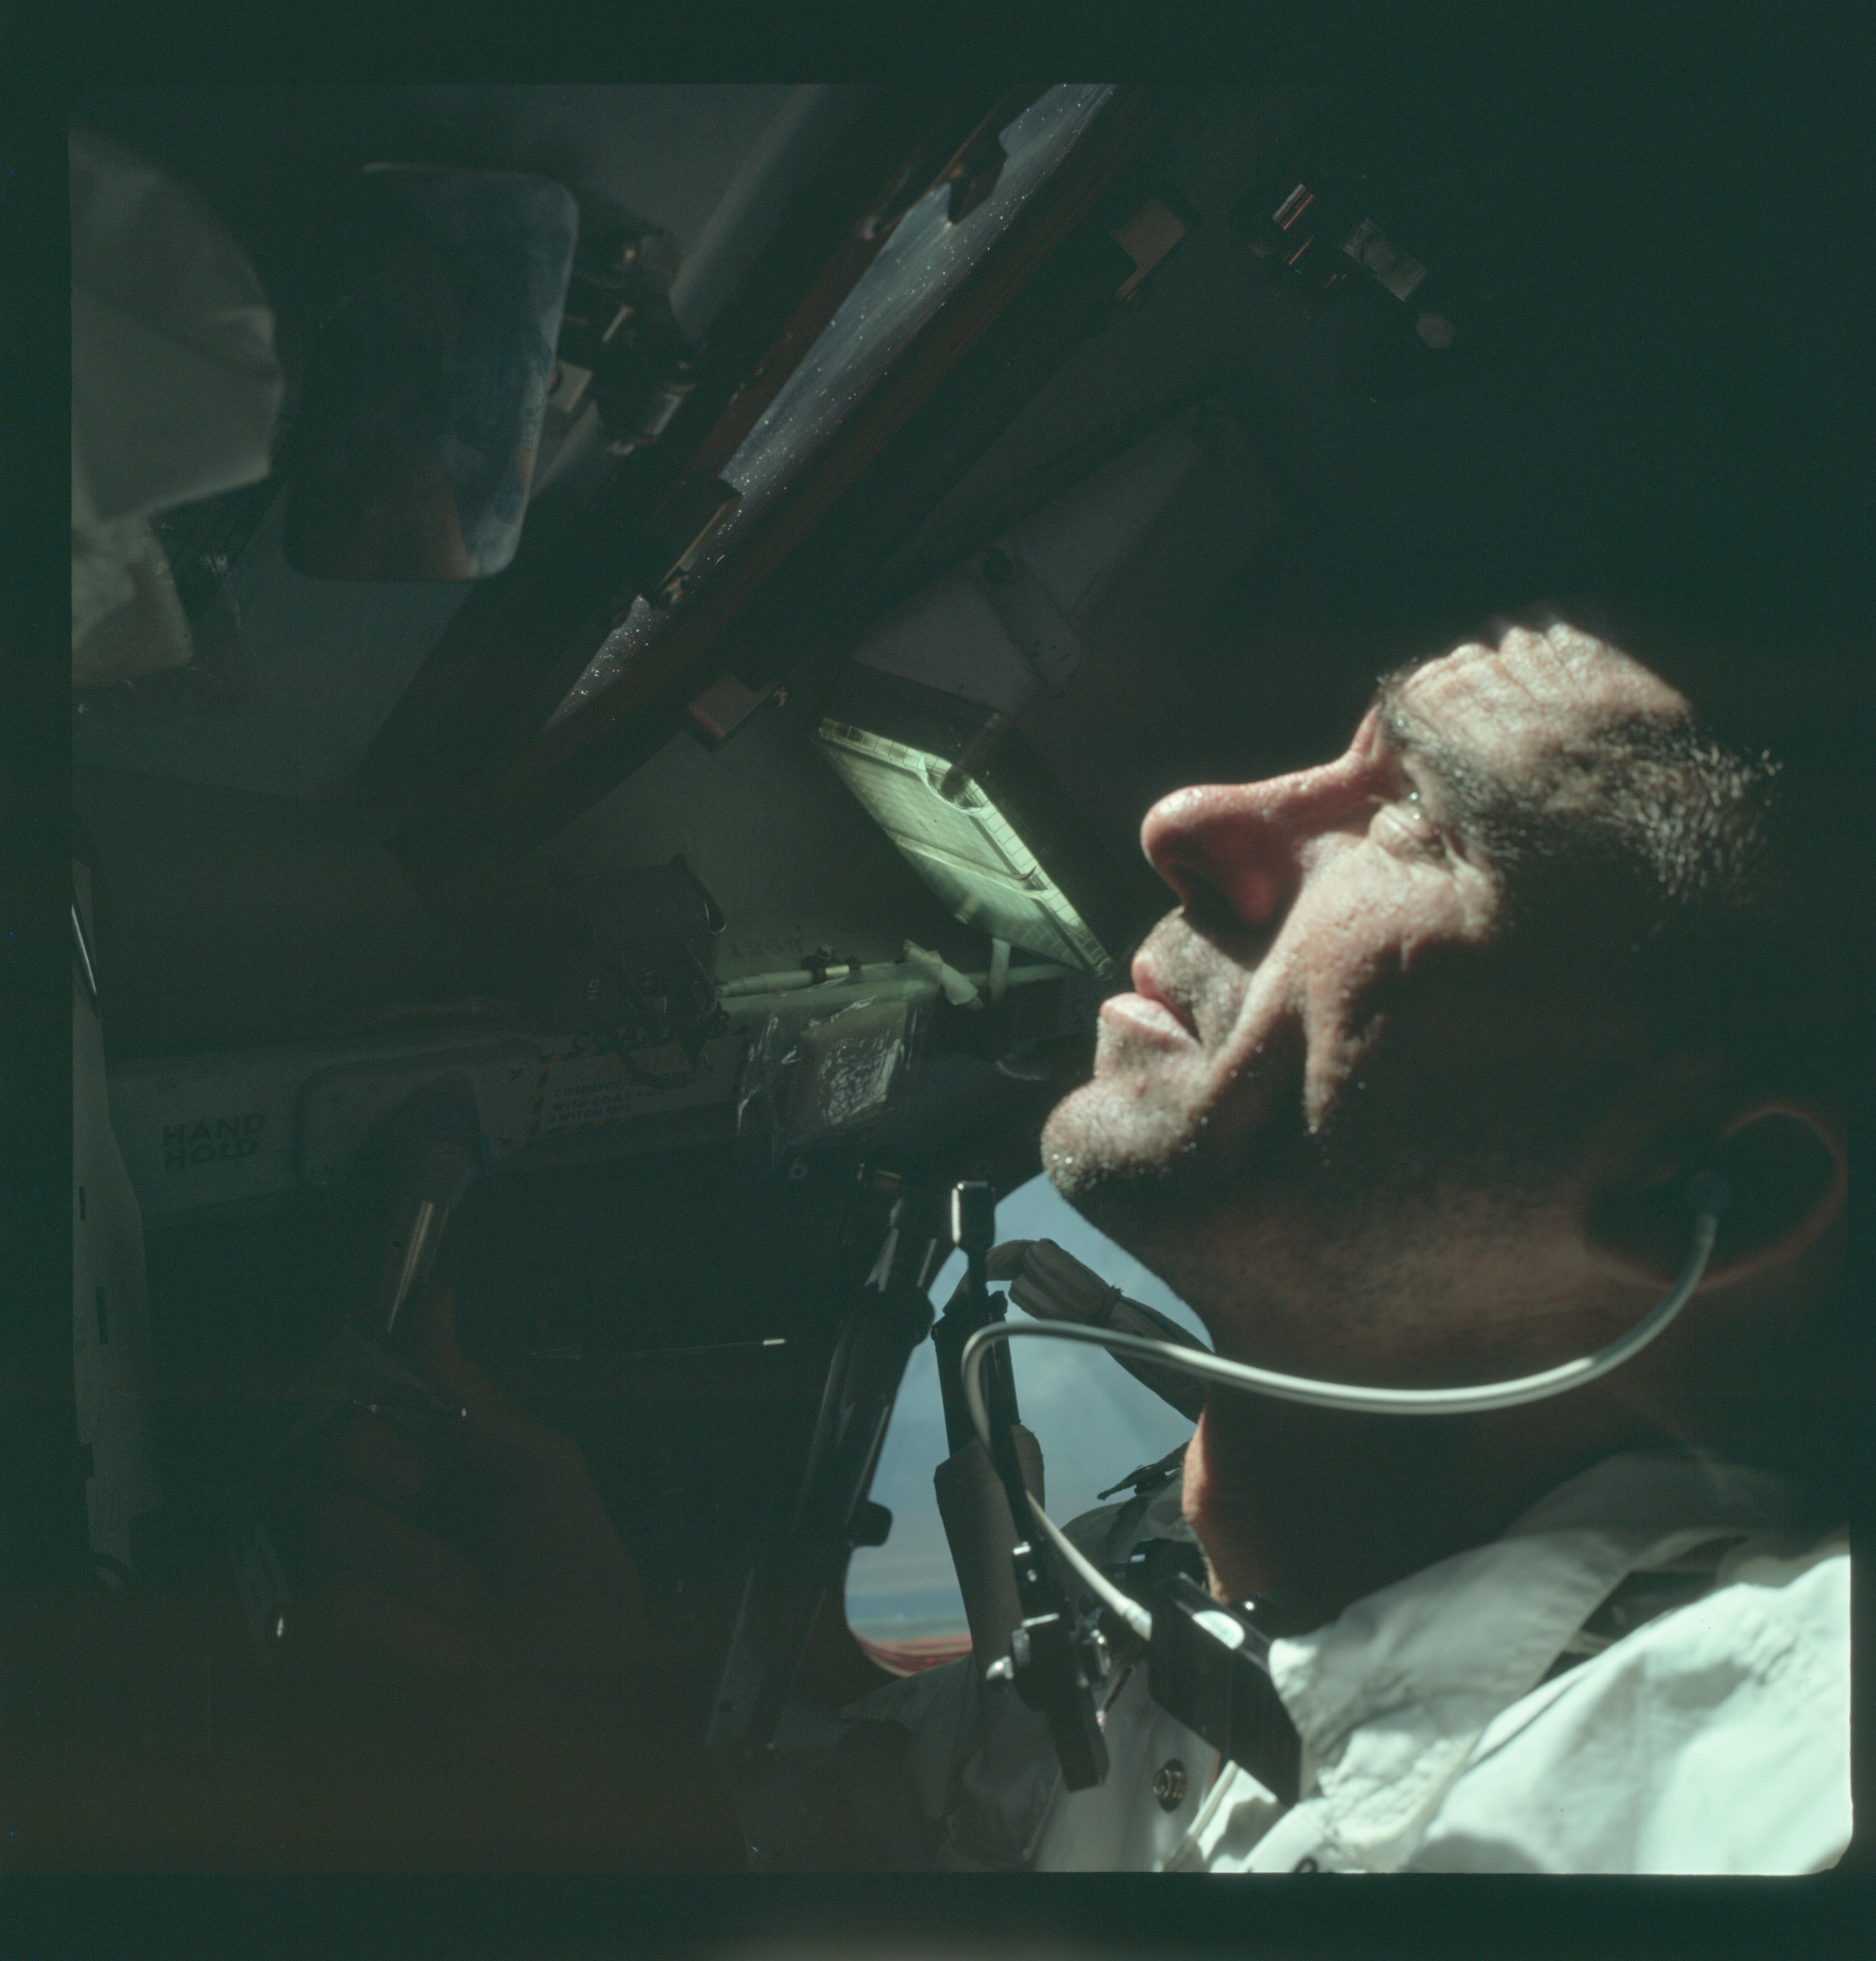 Walter Cunningham pełniący rolę pilota modułu księżycowego na pokładzie statku kosmicznego podczas misji Apollo 7, czyli pierwszego załogowego lotu w ramach programu Apollo, którego celem było przetestowanie statku, przećwiczenie manewrów w przestrzeni kosmicznej i przeprowadzenie wielu innych eksperymentów. Przez wydarzenia, jakie miały miejsce podczas tego lotu, żaden z astronautów obecnych na pokładzie Apollo 7 nie powrócił już do przestrzeni kosmicznej.